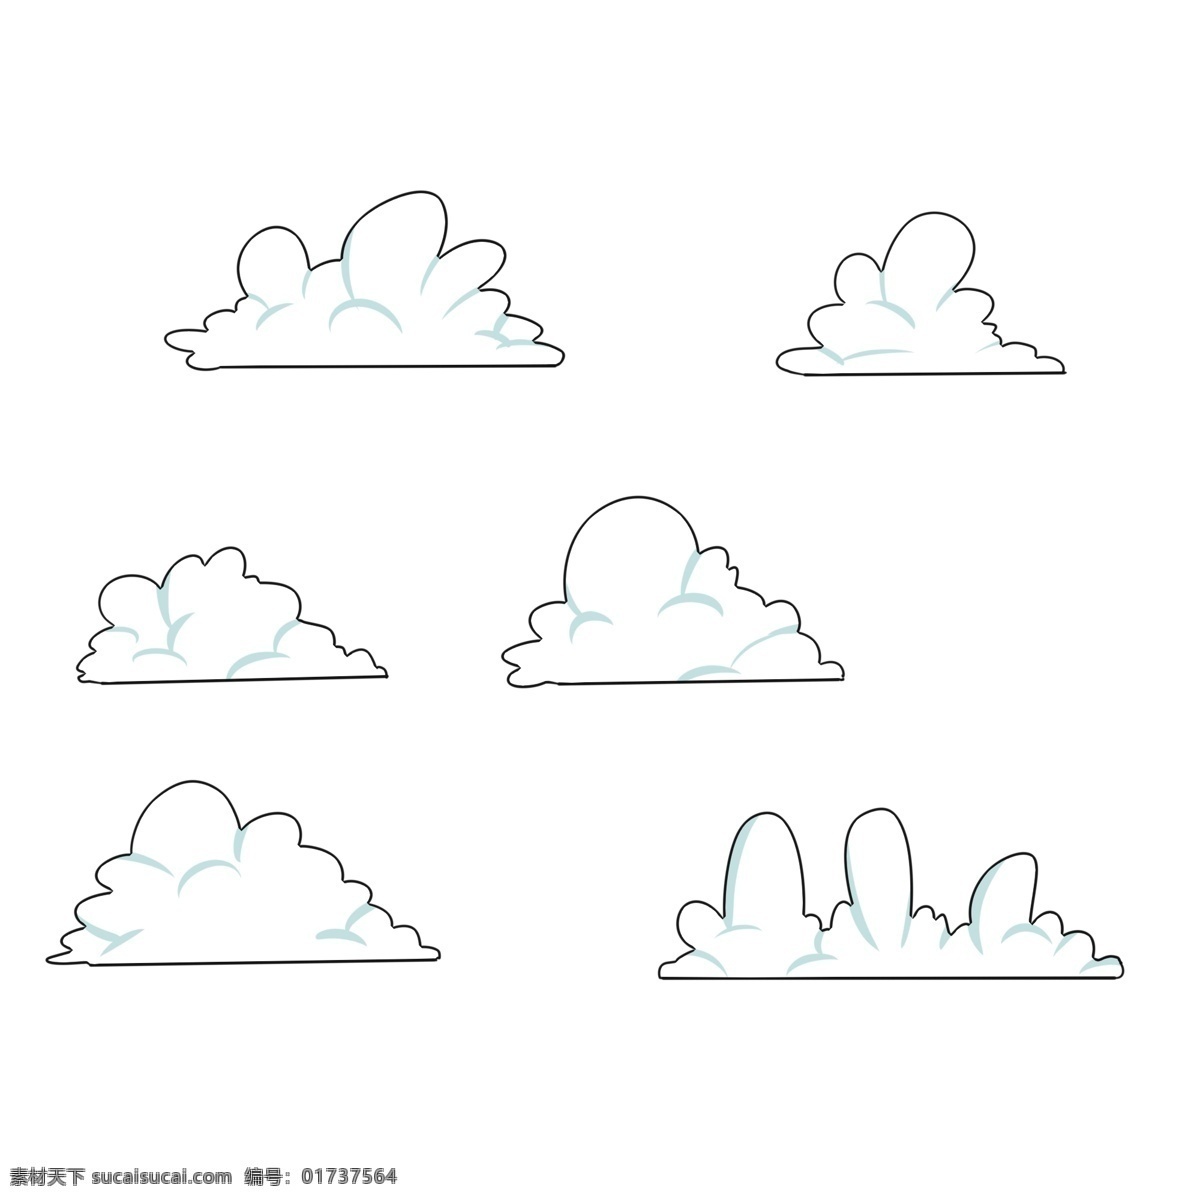 云朵 手绘 卡通 系列 装饰画 美好 寓意 淡雅 点缀 颜色 朴素 蓬松 卡通风格 白云朵朵 天边的 蓝色云彩